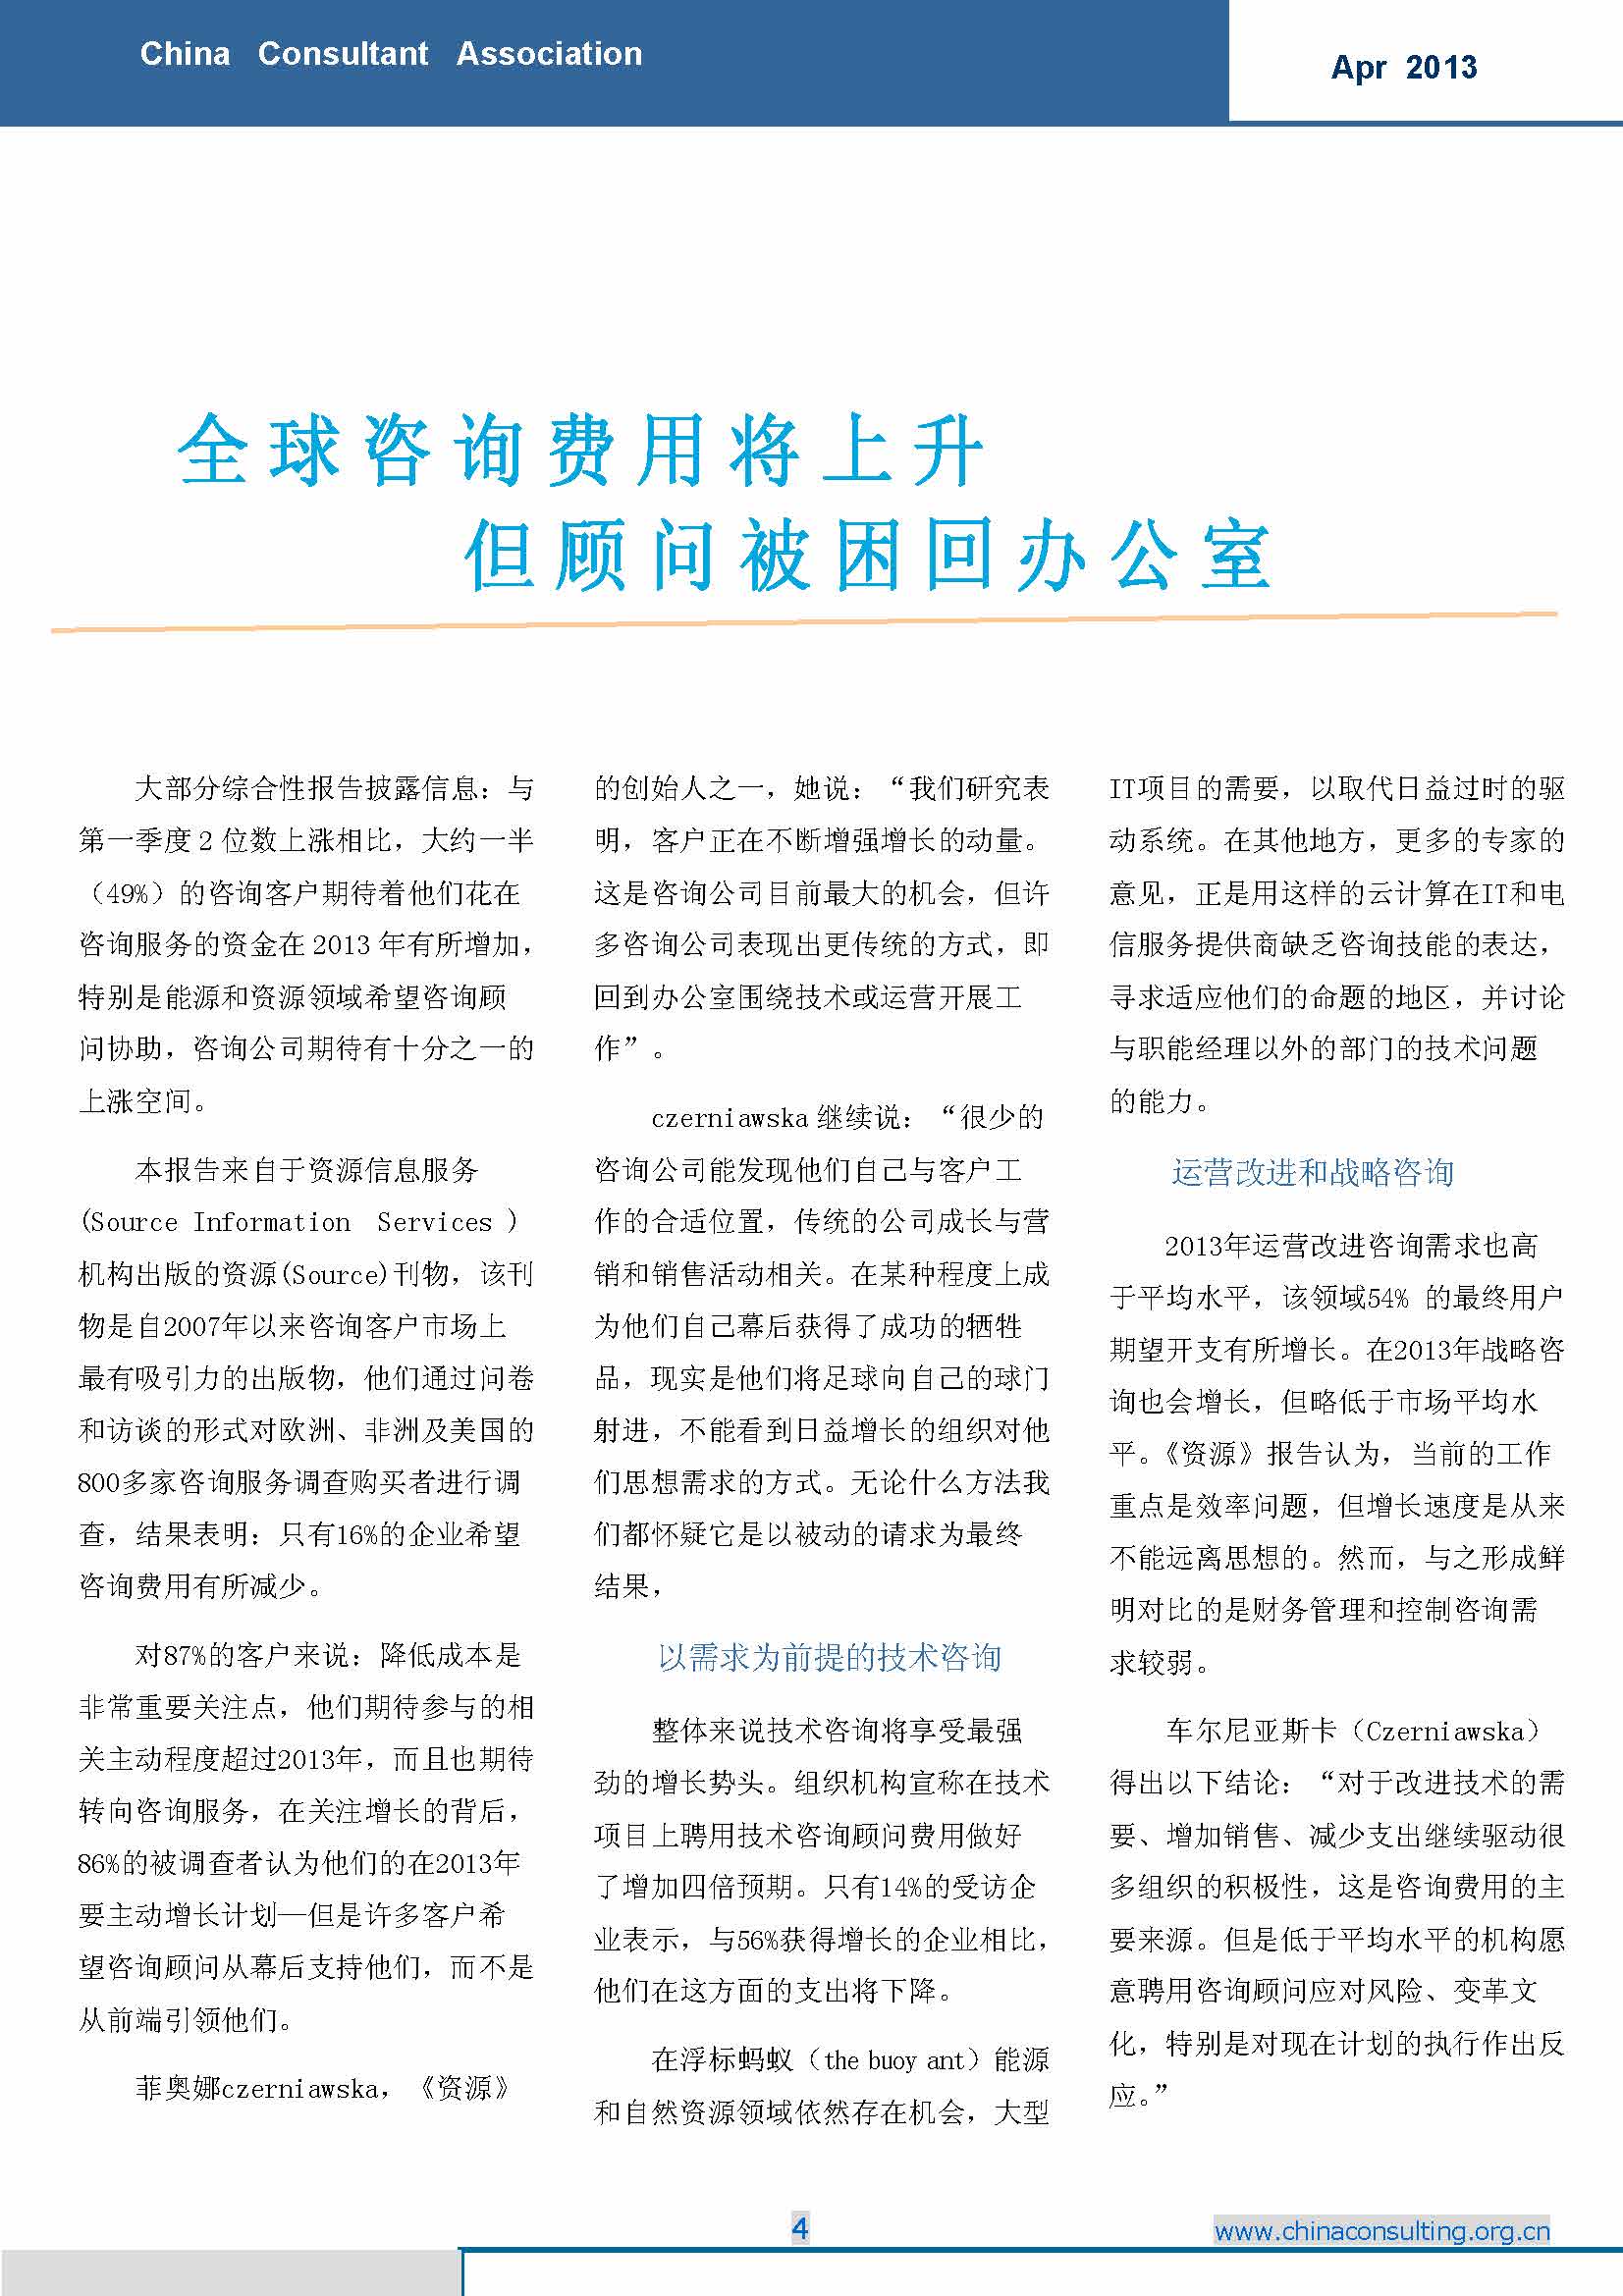 12中国科技咨询协会国际快讯（第十二期）_页面_06.jpg